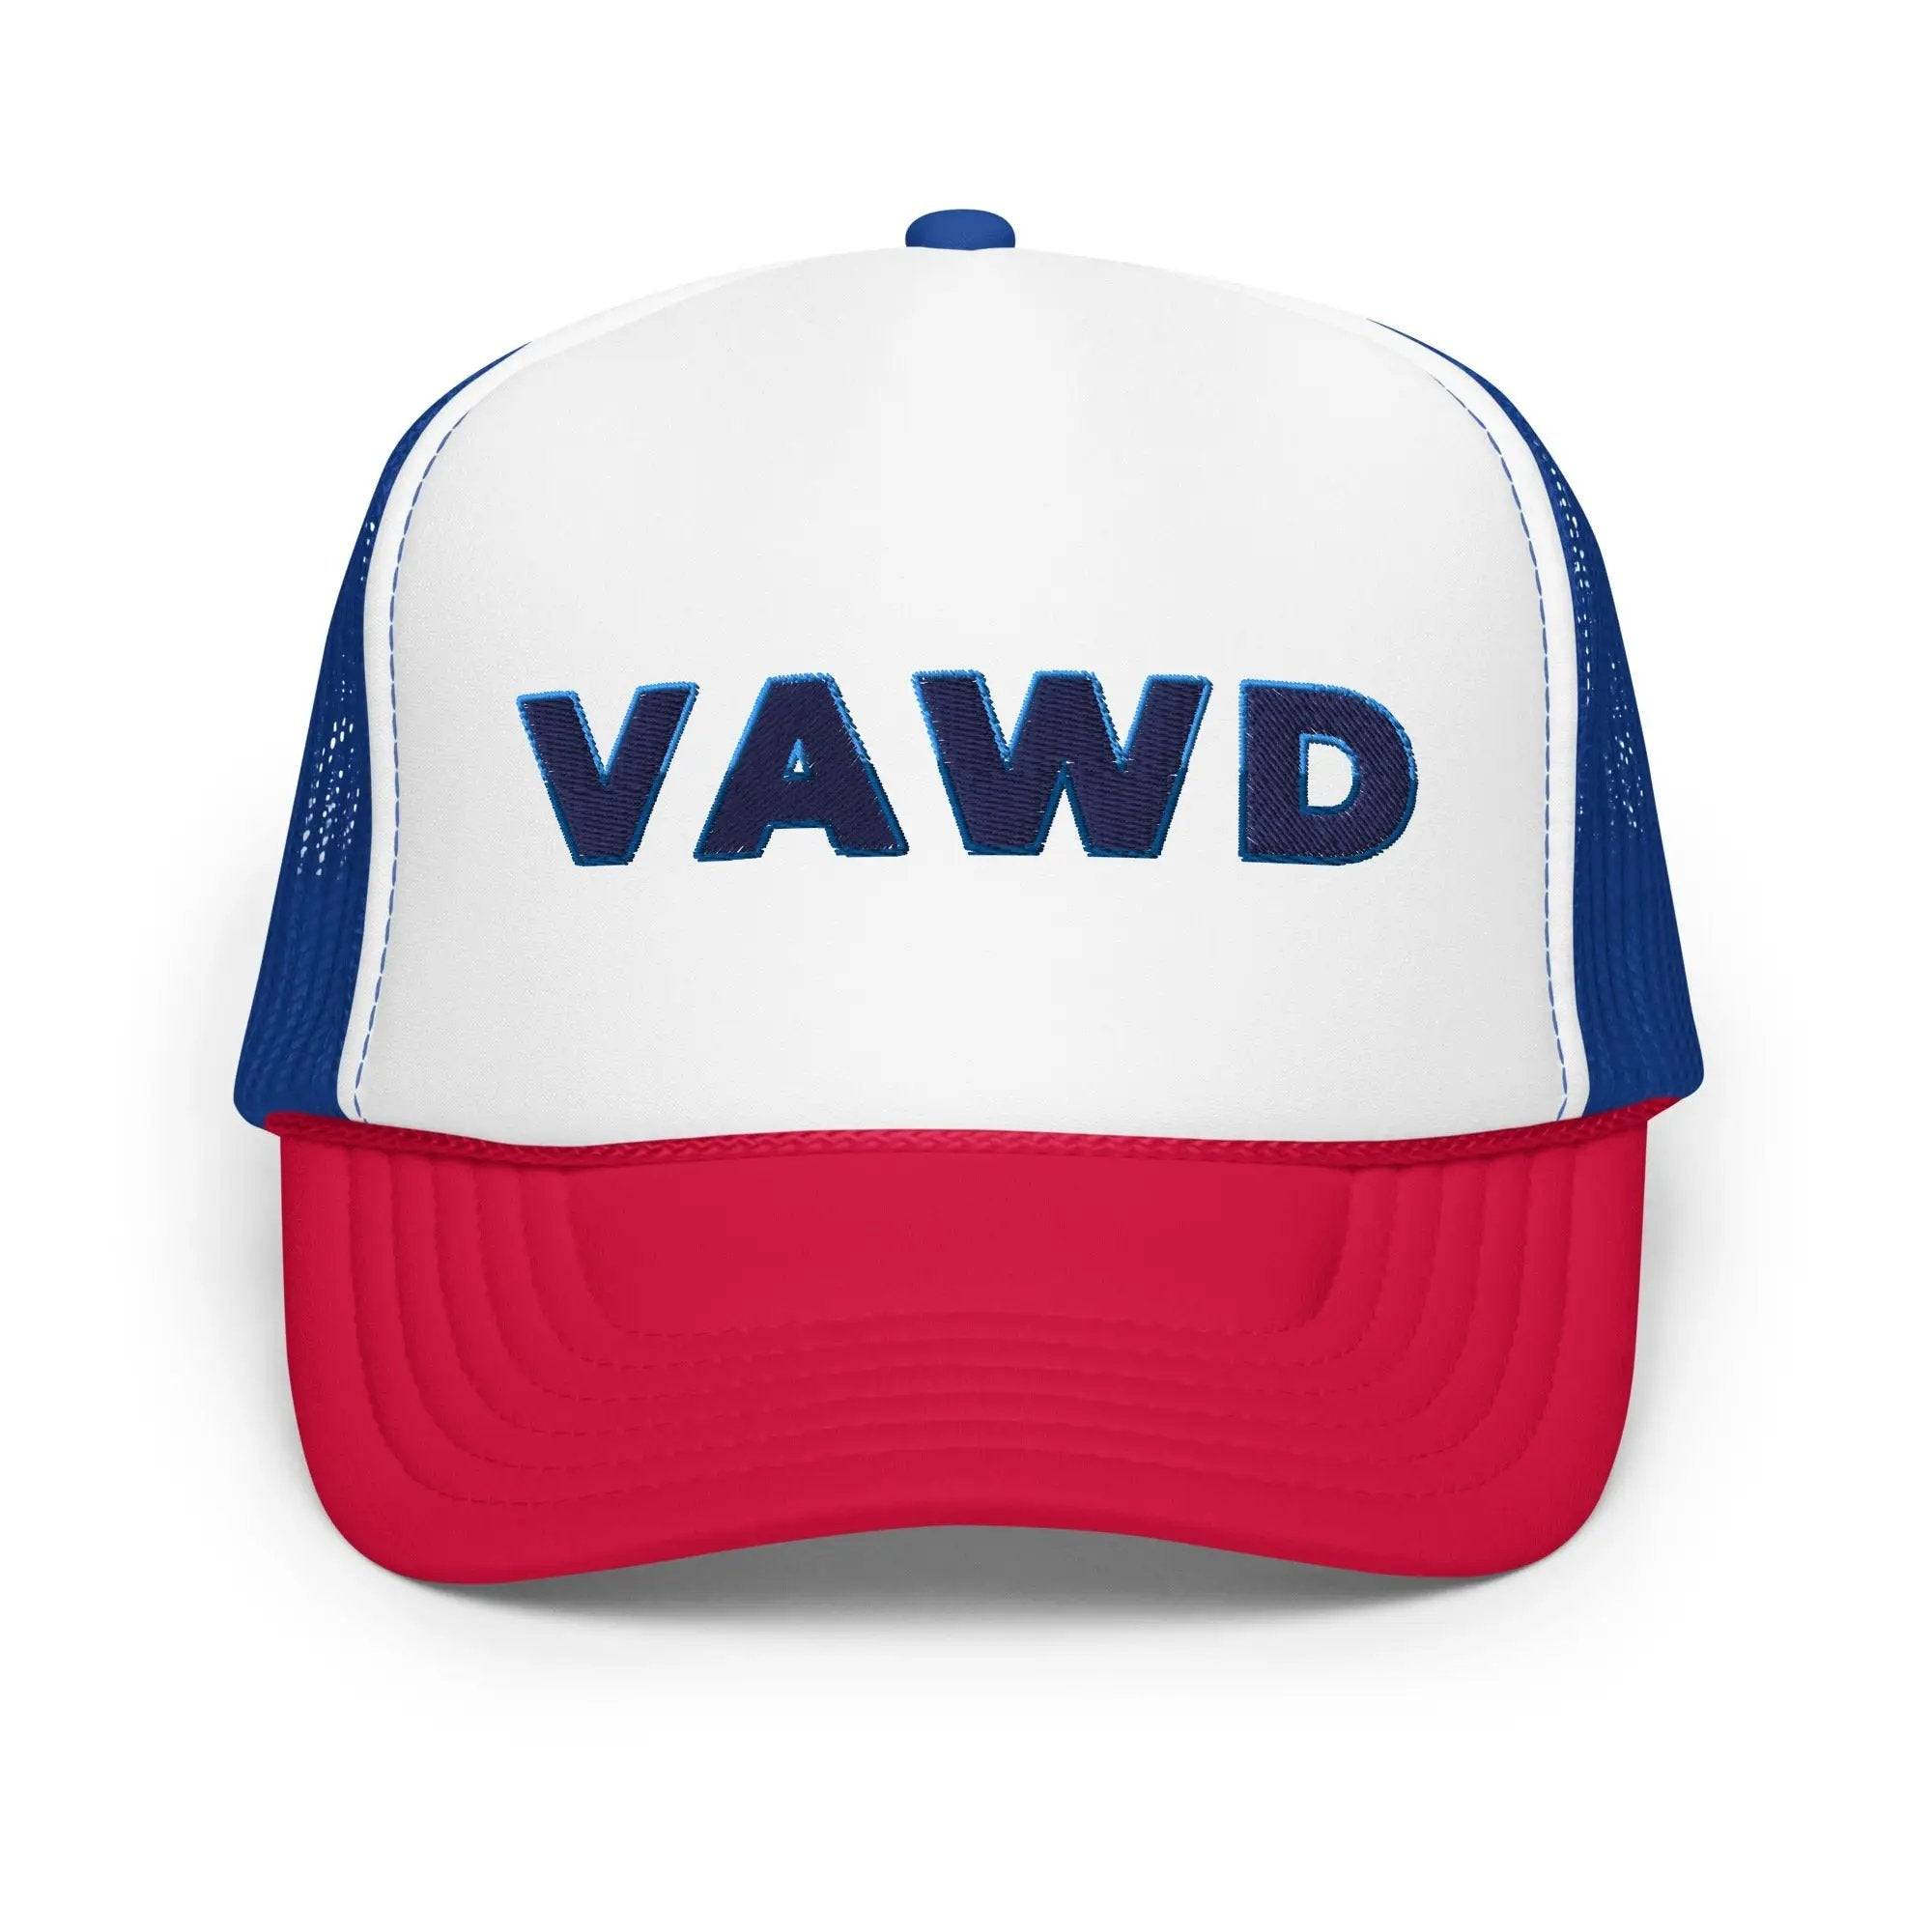 Trucker Hat with VAWD written on it